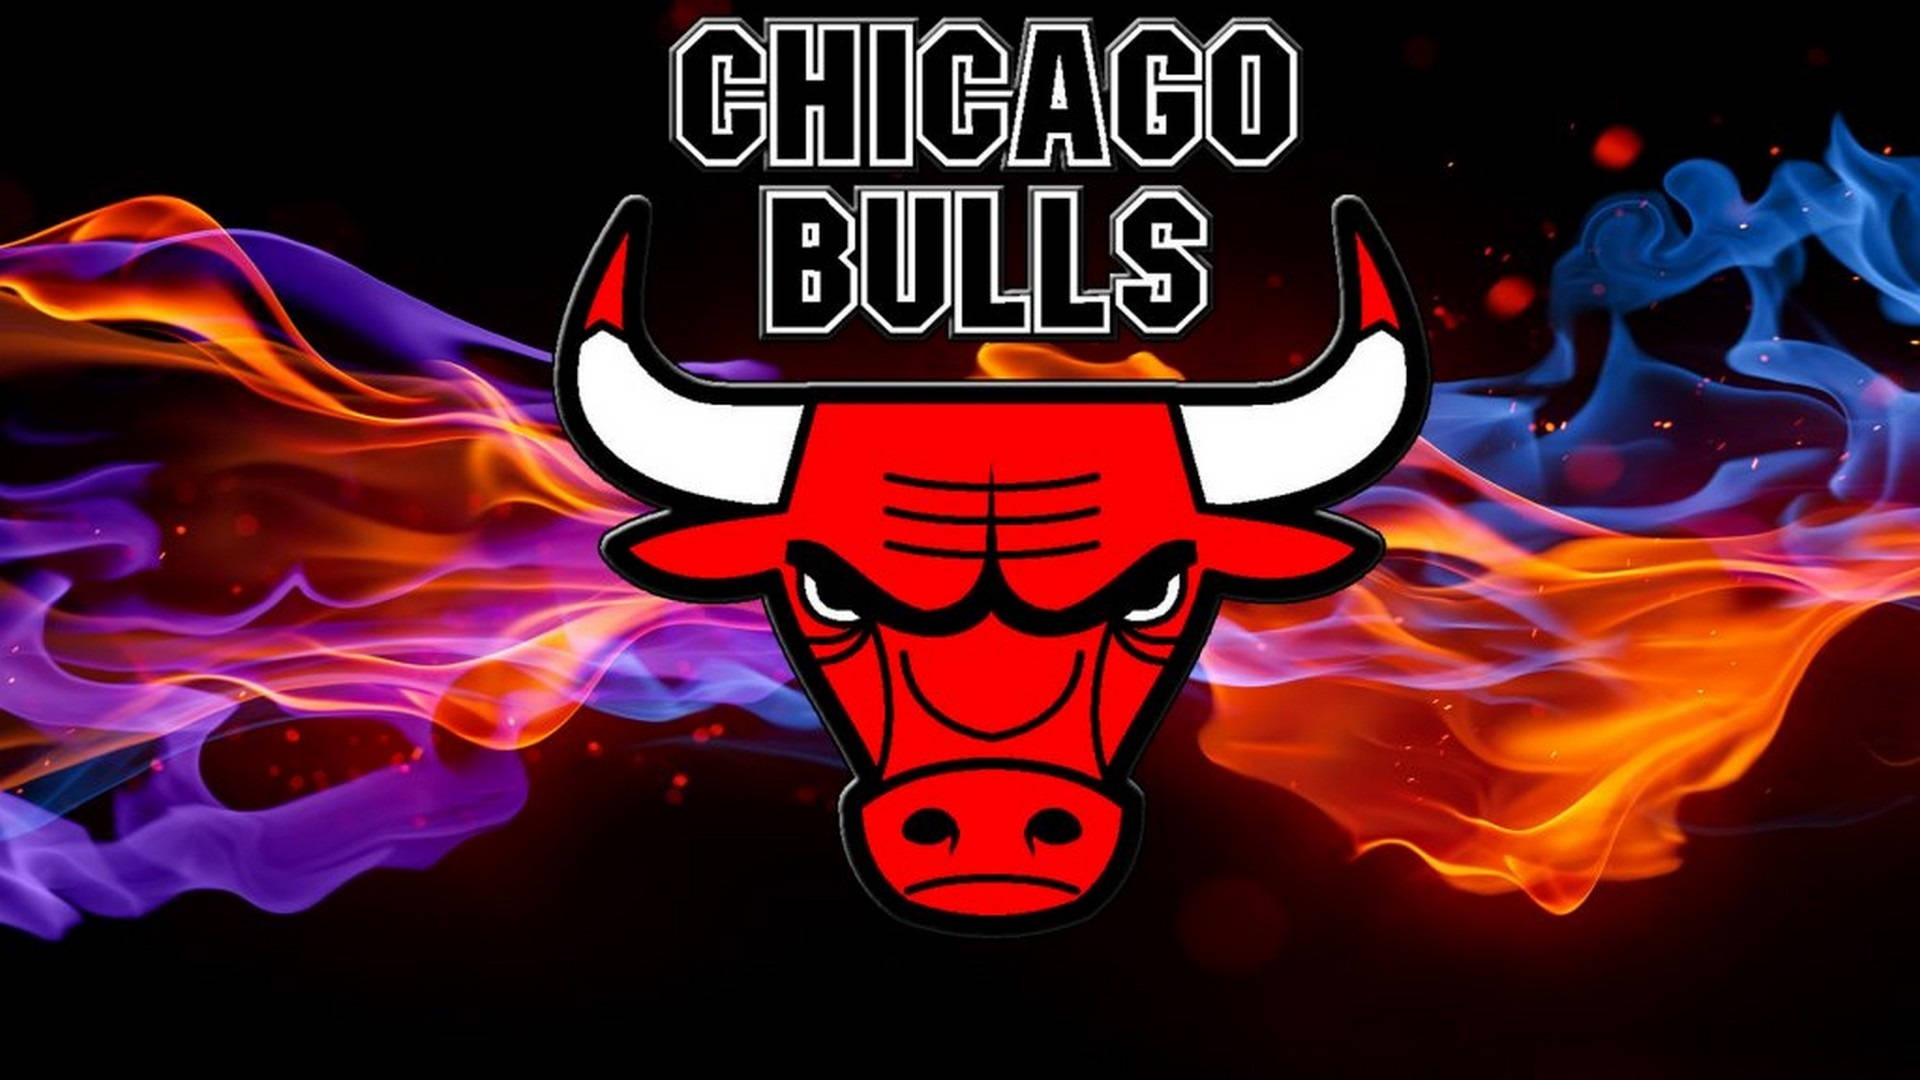 Chicago Bulls Stylised Bull Illustration Wallpaper